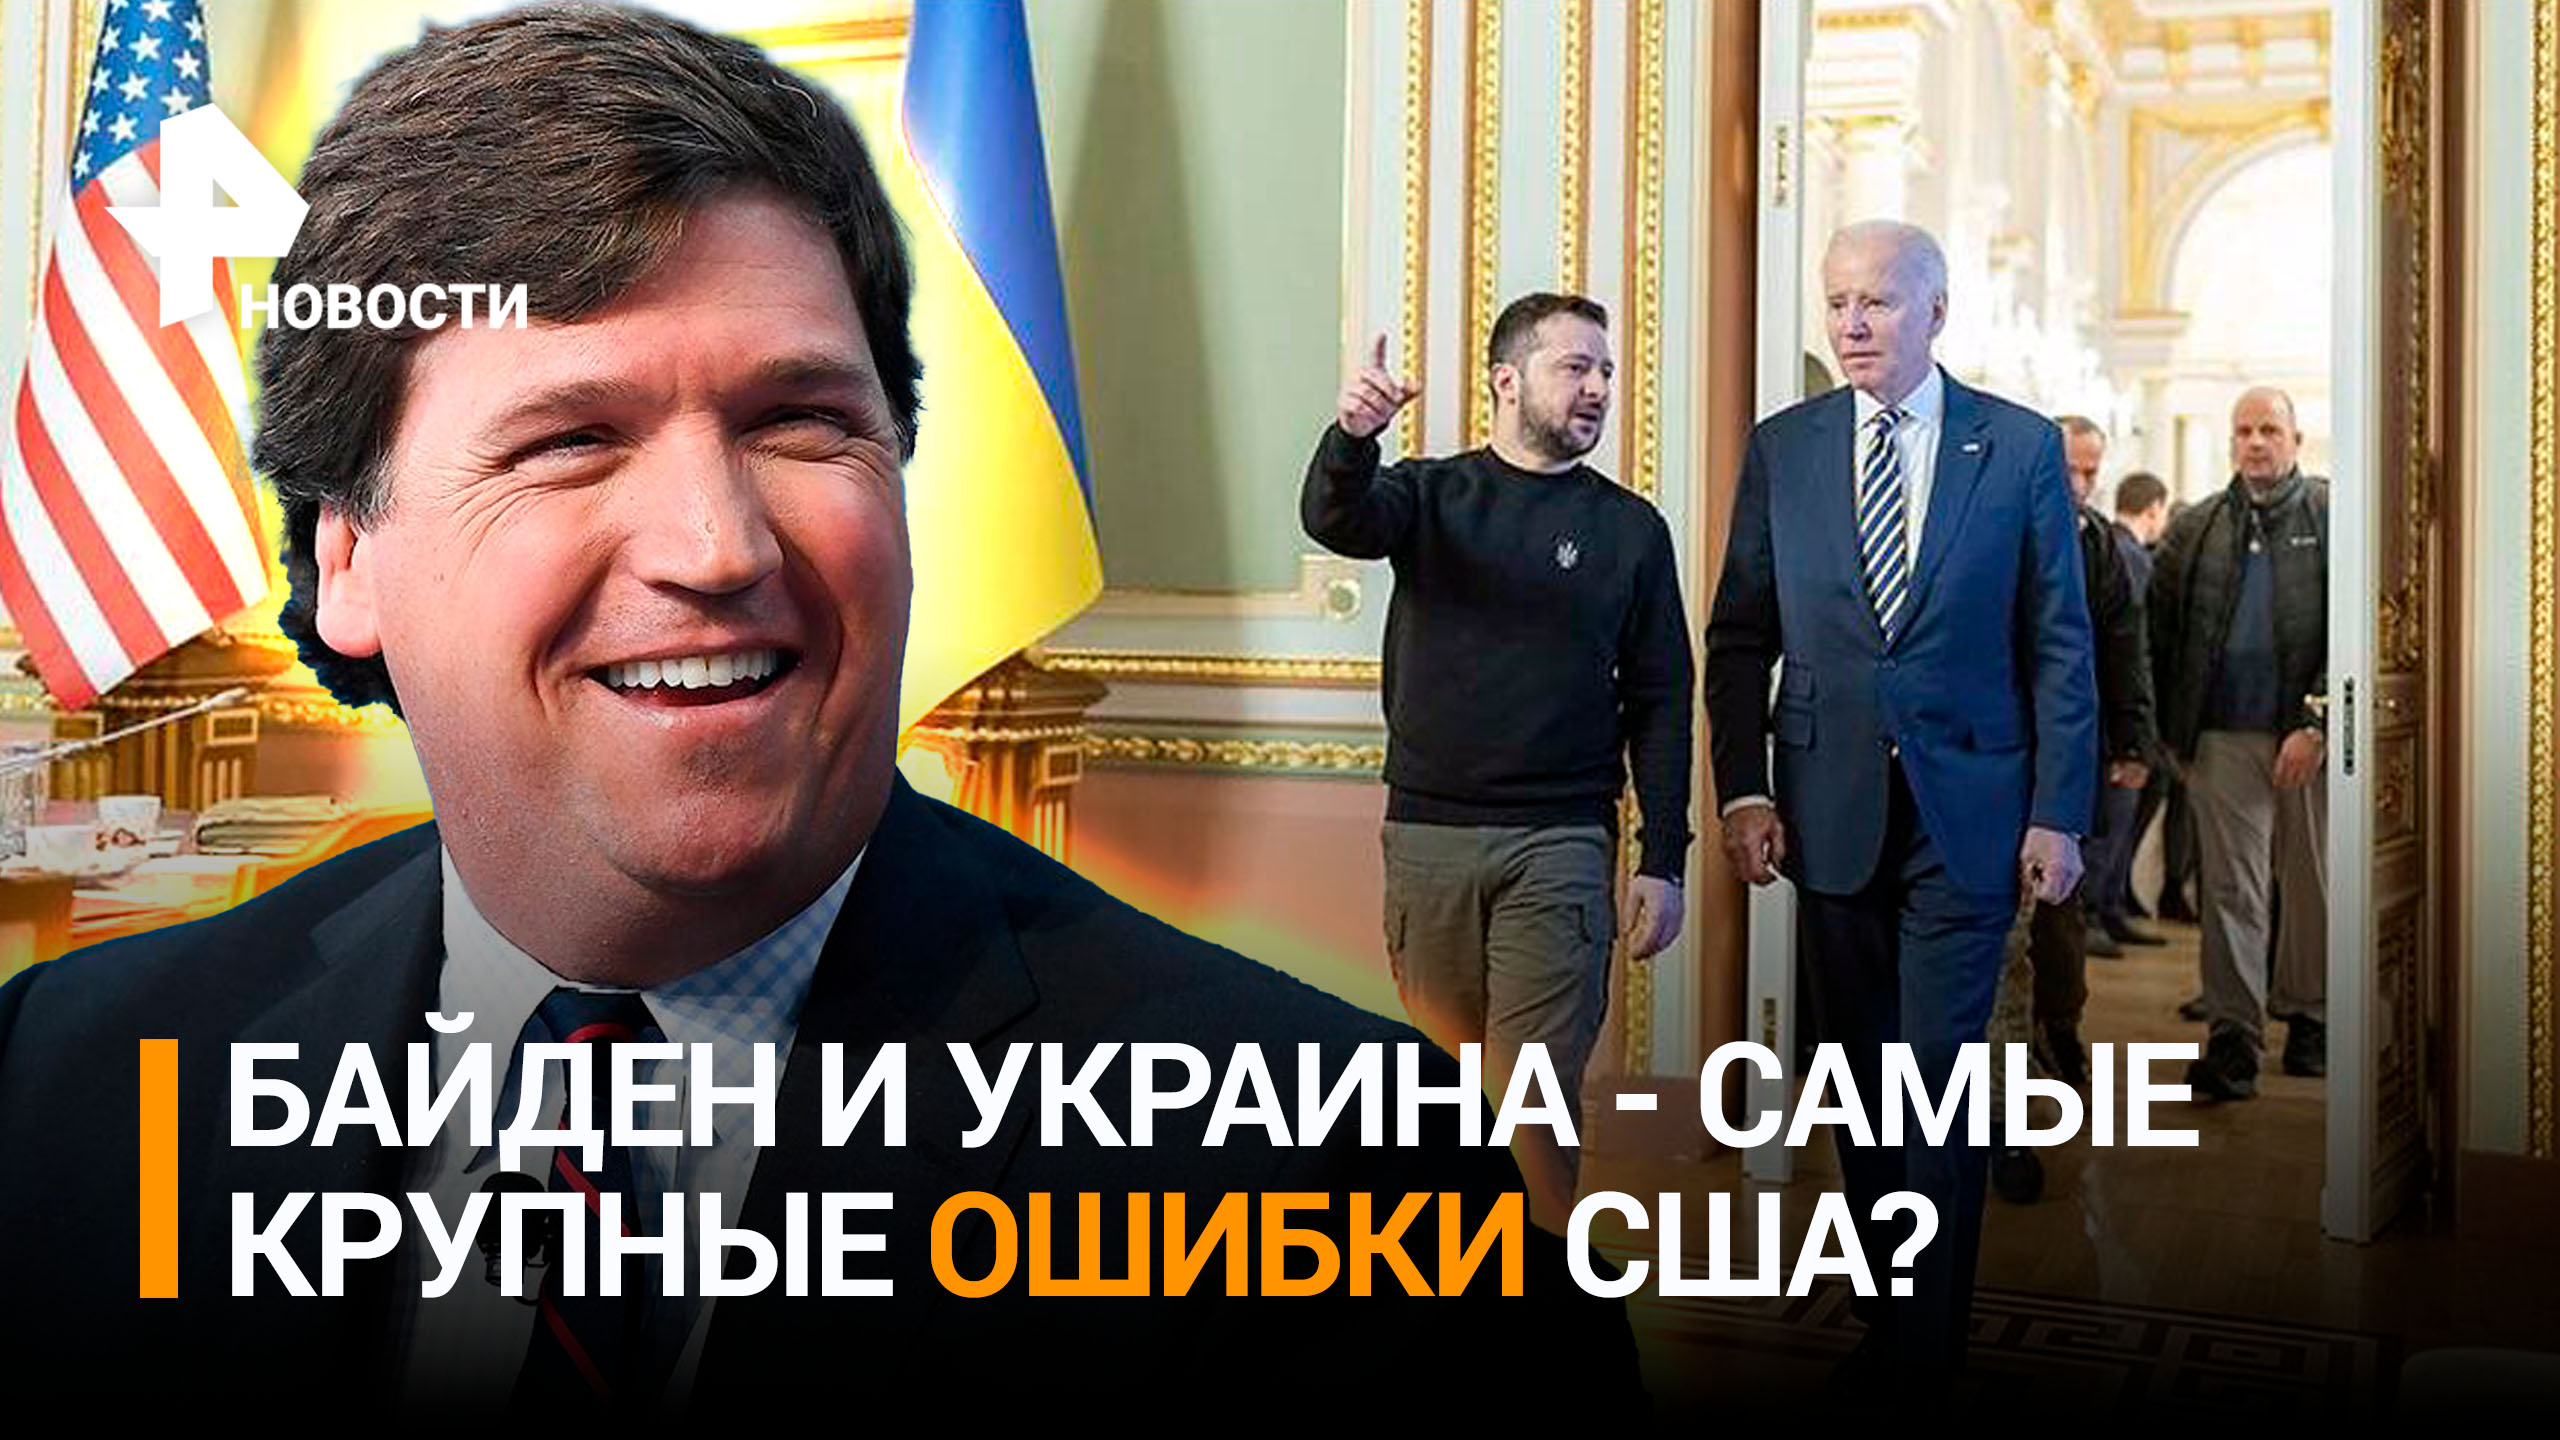 Ведущий Карлсон назвал Украину и Байдена двумя главными ошибками в истории США / РЕН Новости